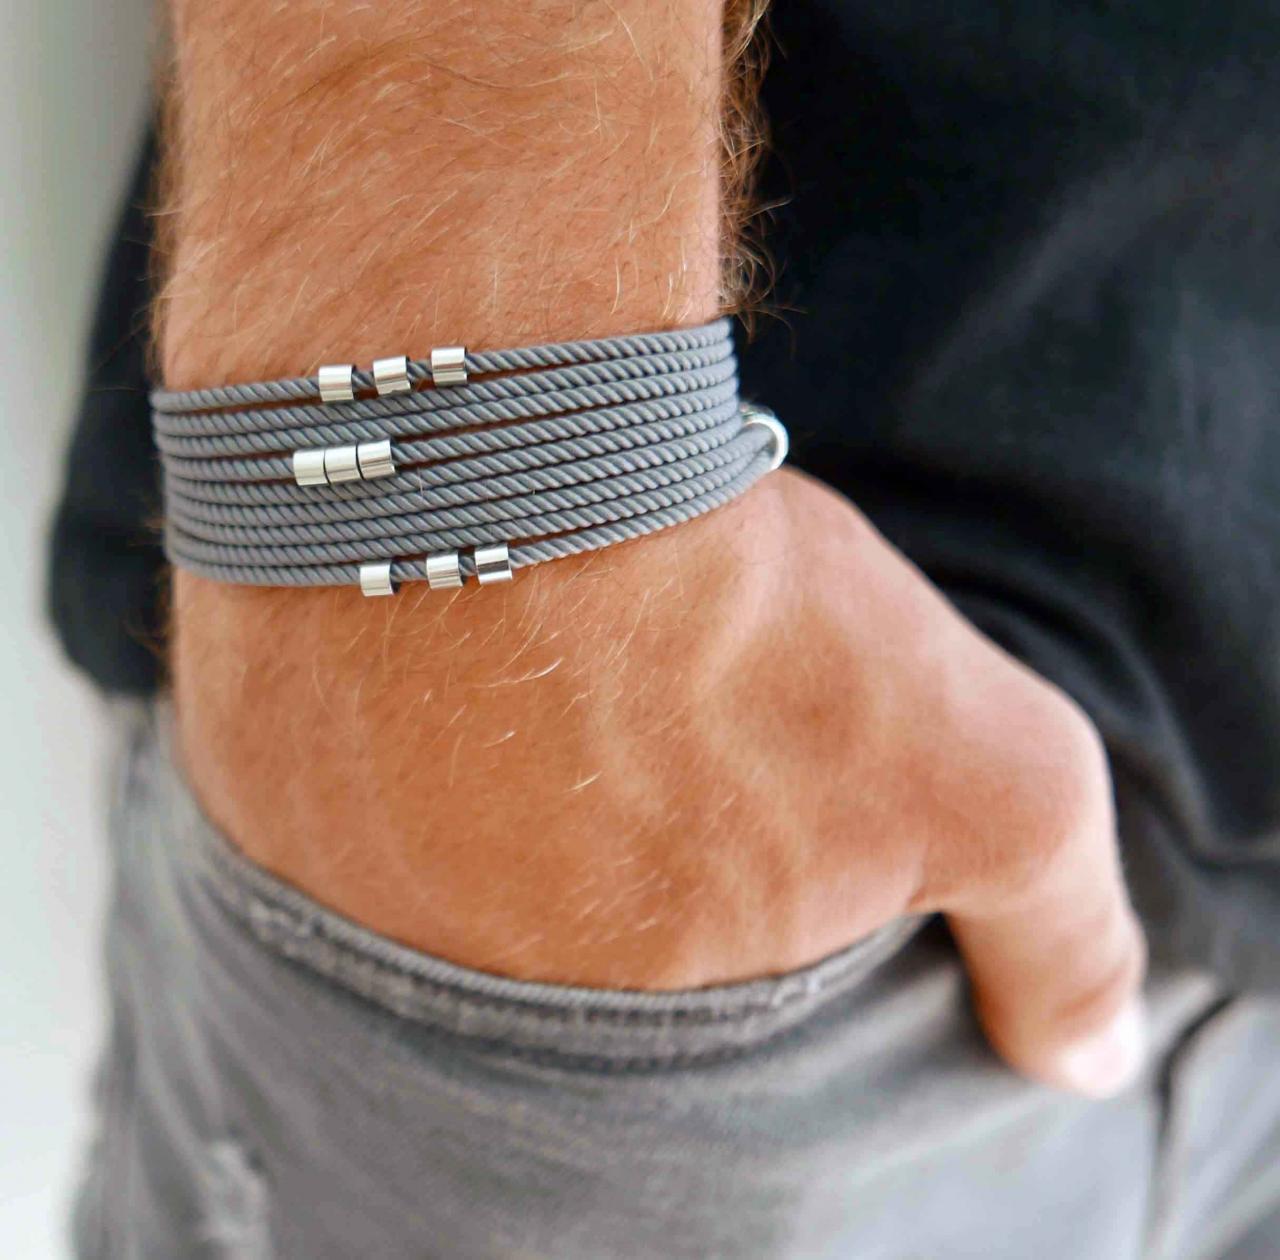 Men's Bracelet - Men's Beads Bracelet - Men's Vegan Bracelet - Men's Jewelry - Men's Gift -